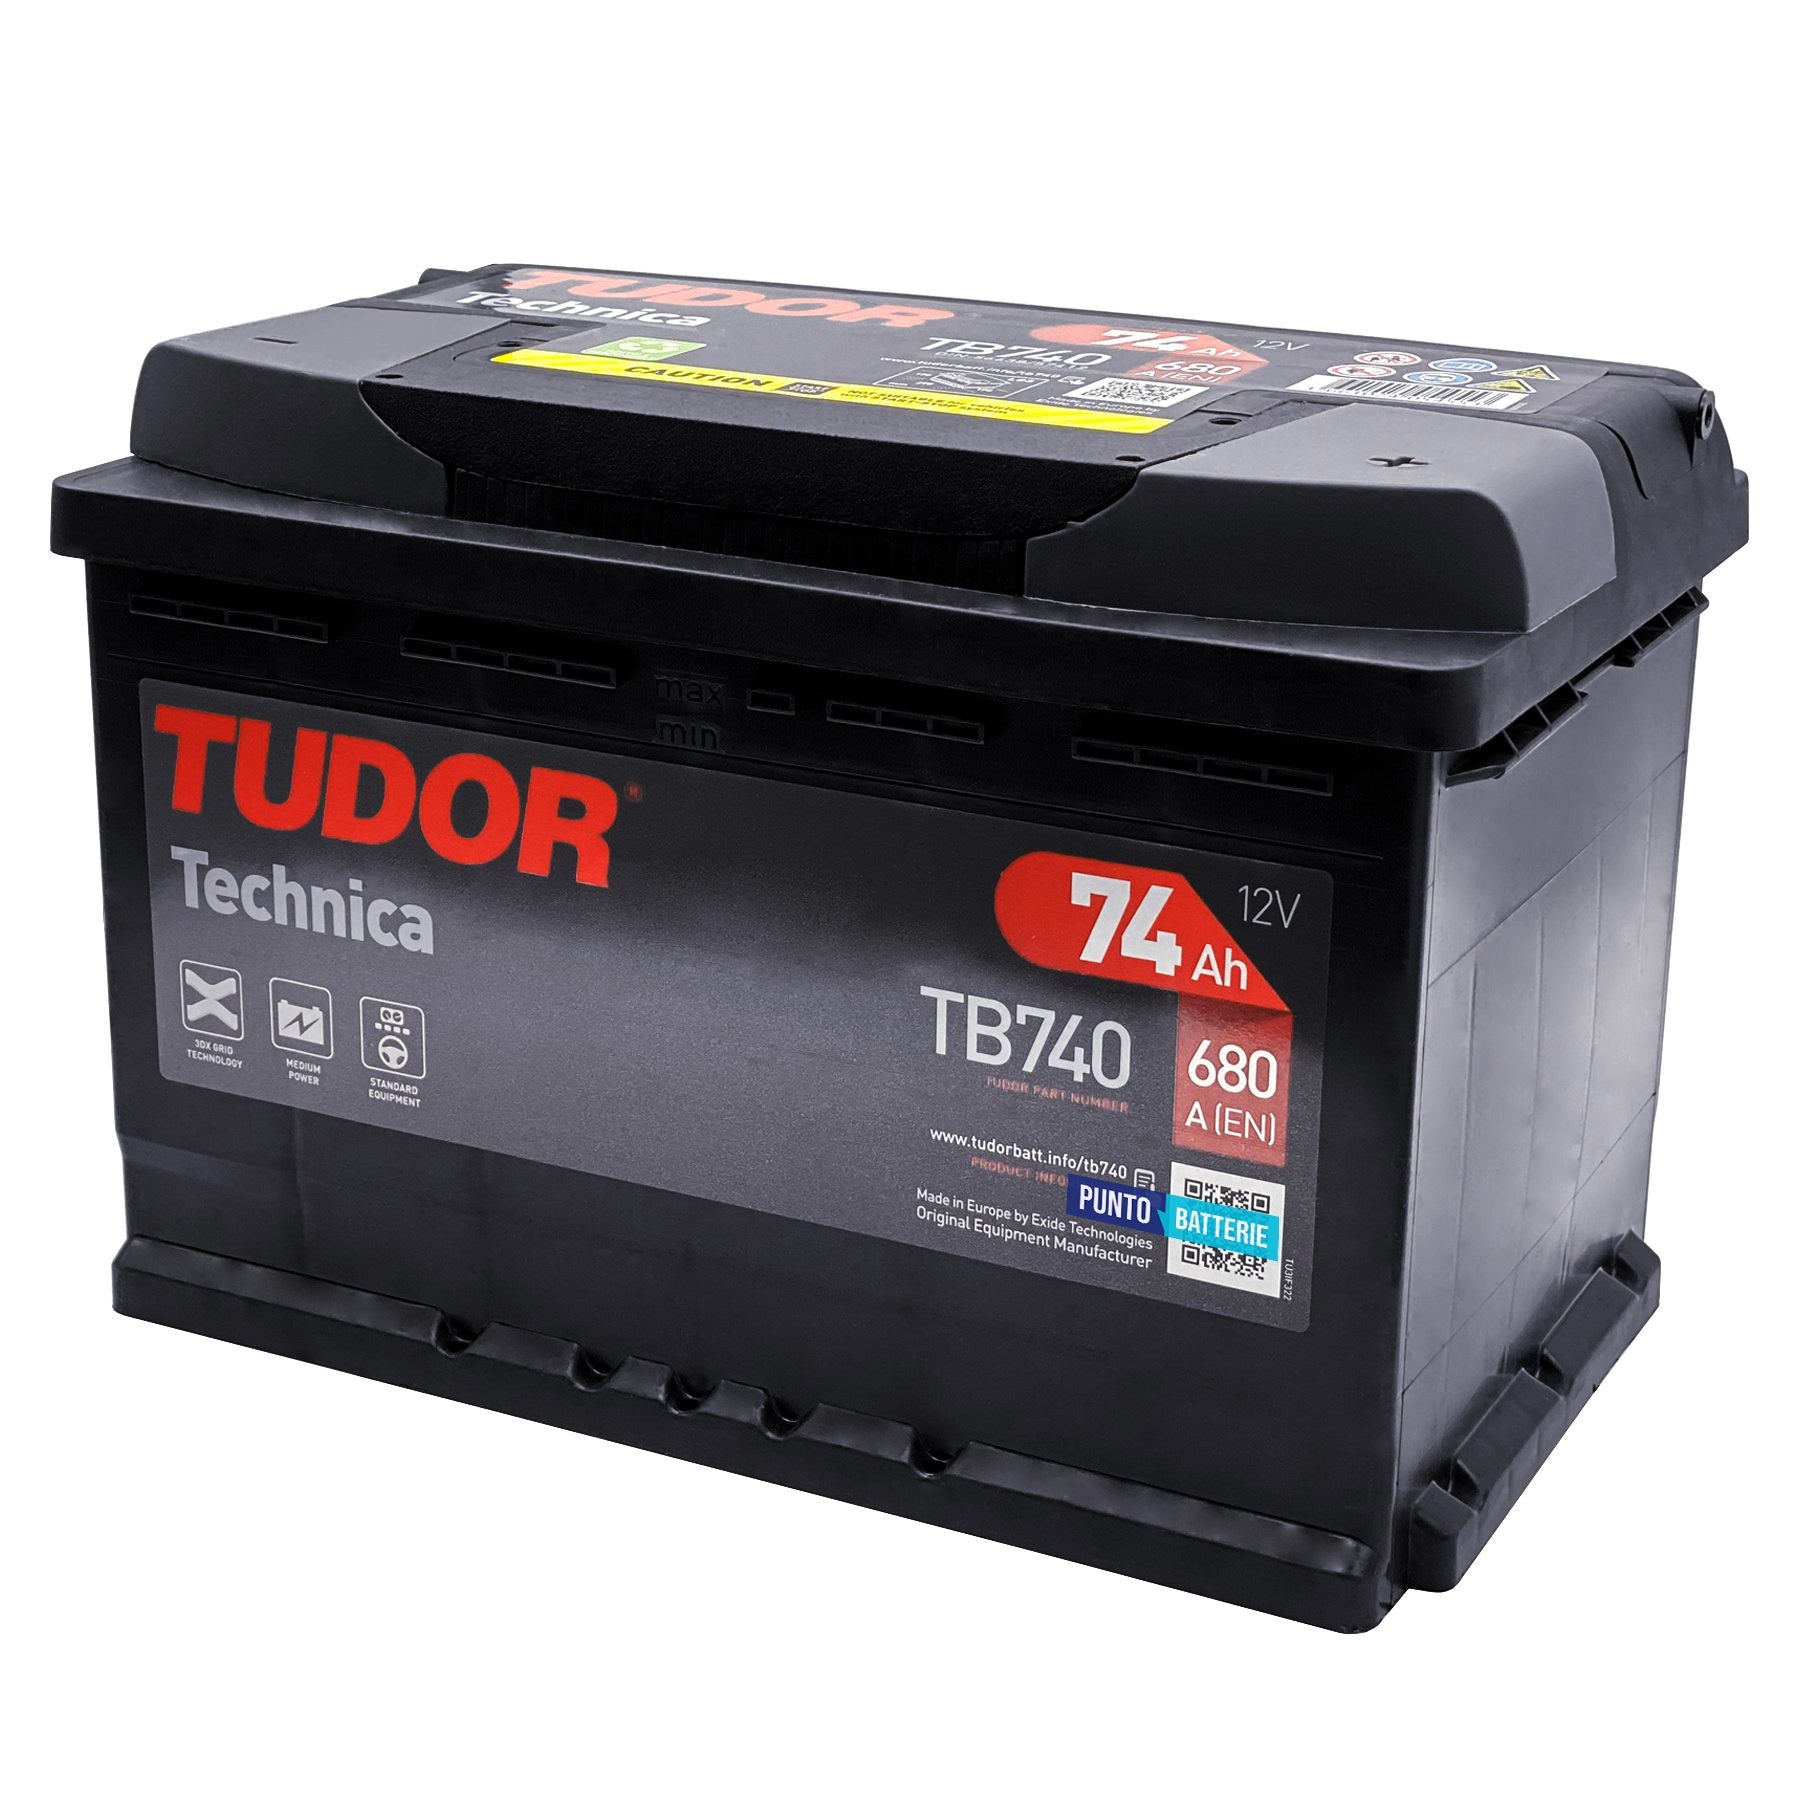 Batería Tudor Tb740 - 74ah 12v 680a. 278x175x190 con Ofertas en Carrefour